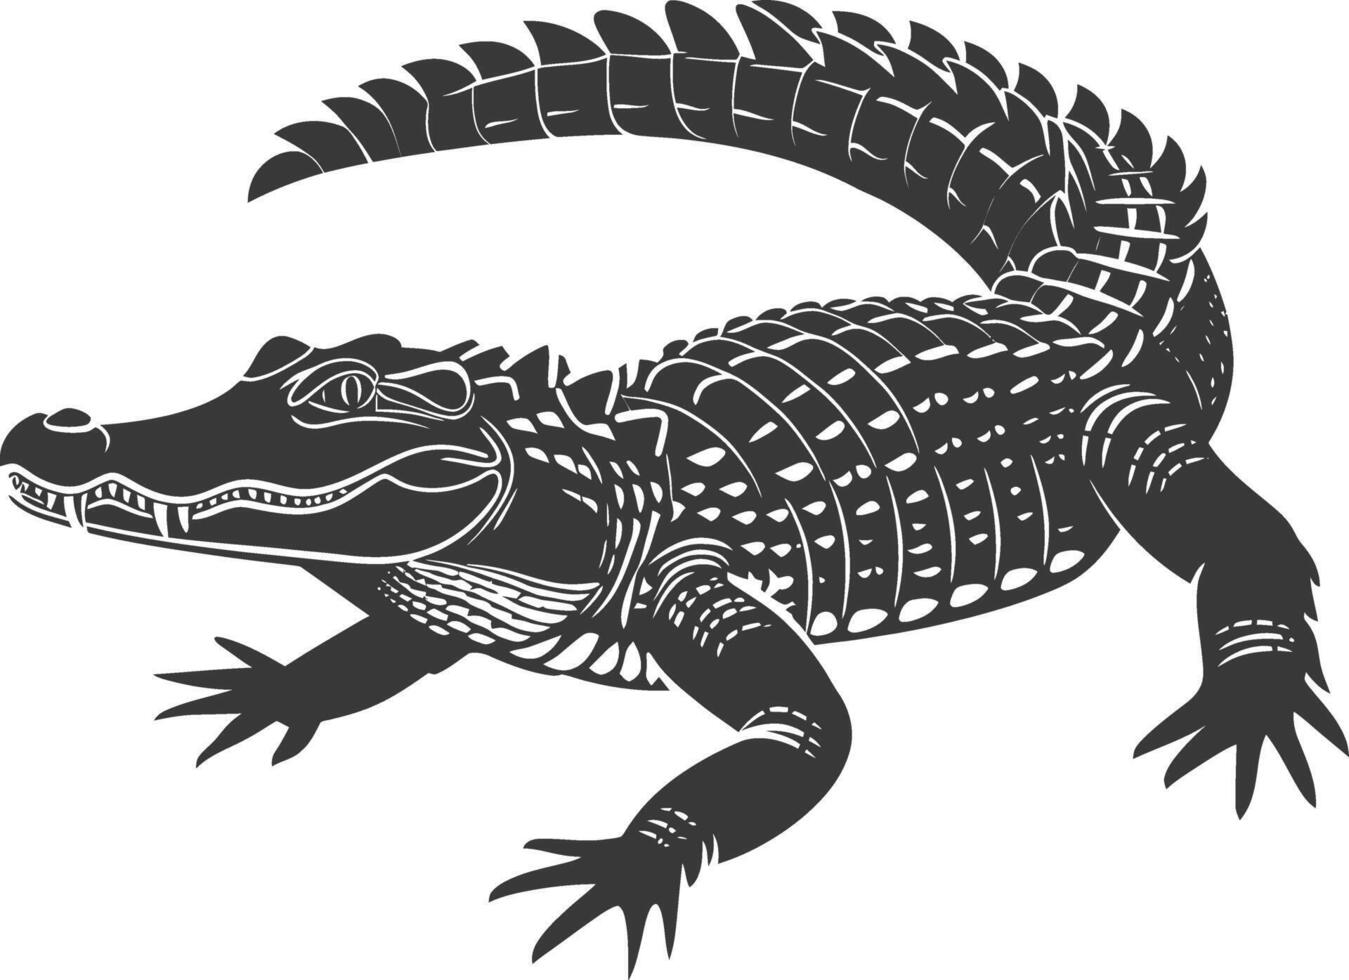 silhouet alligator dier zwart kleur enkel en alleen vol lichaam vector